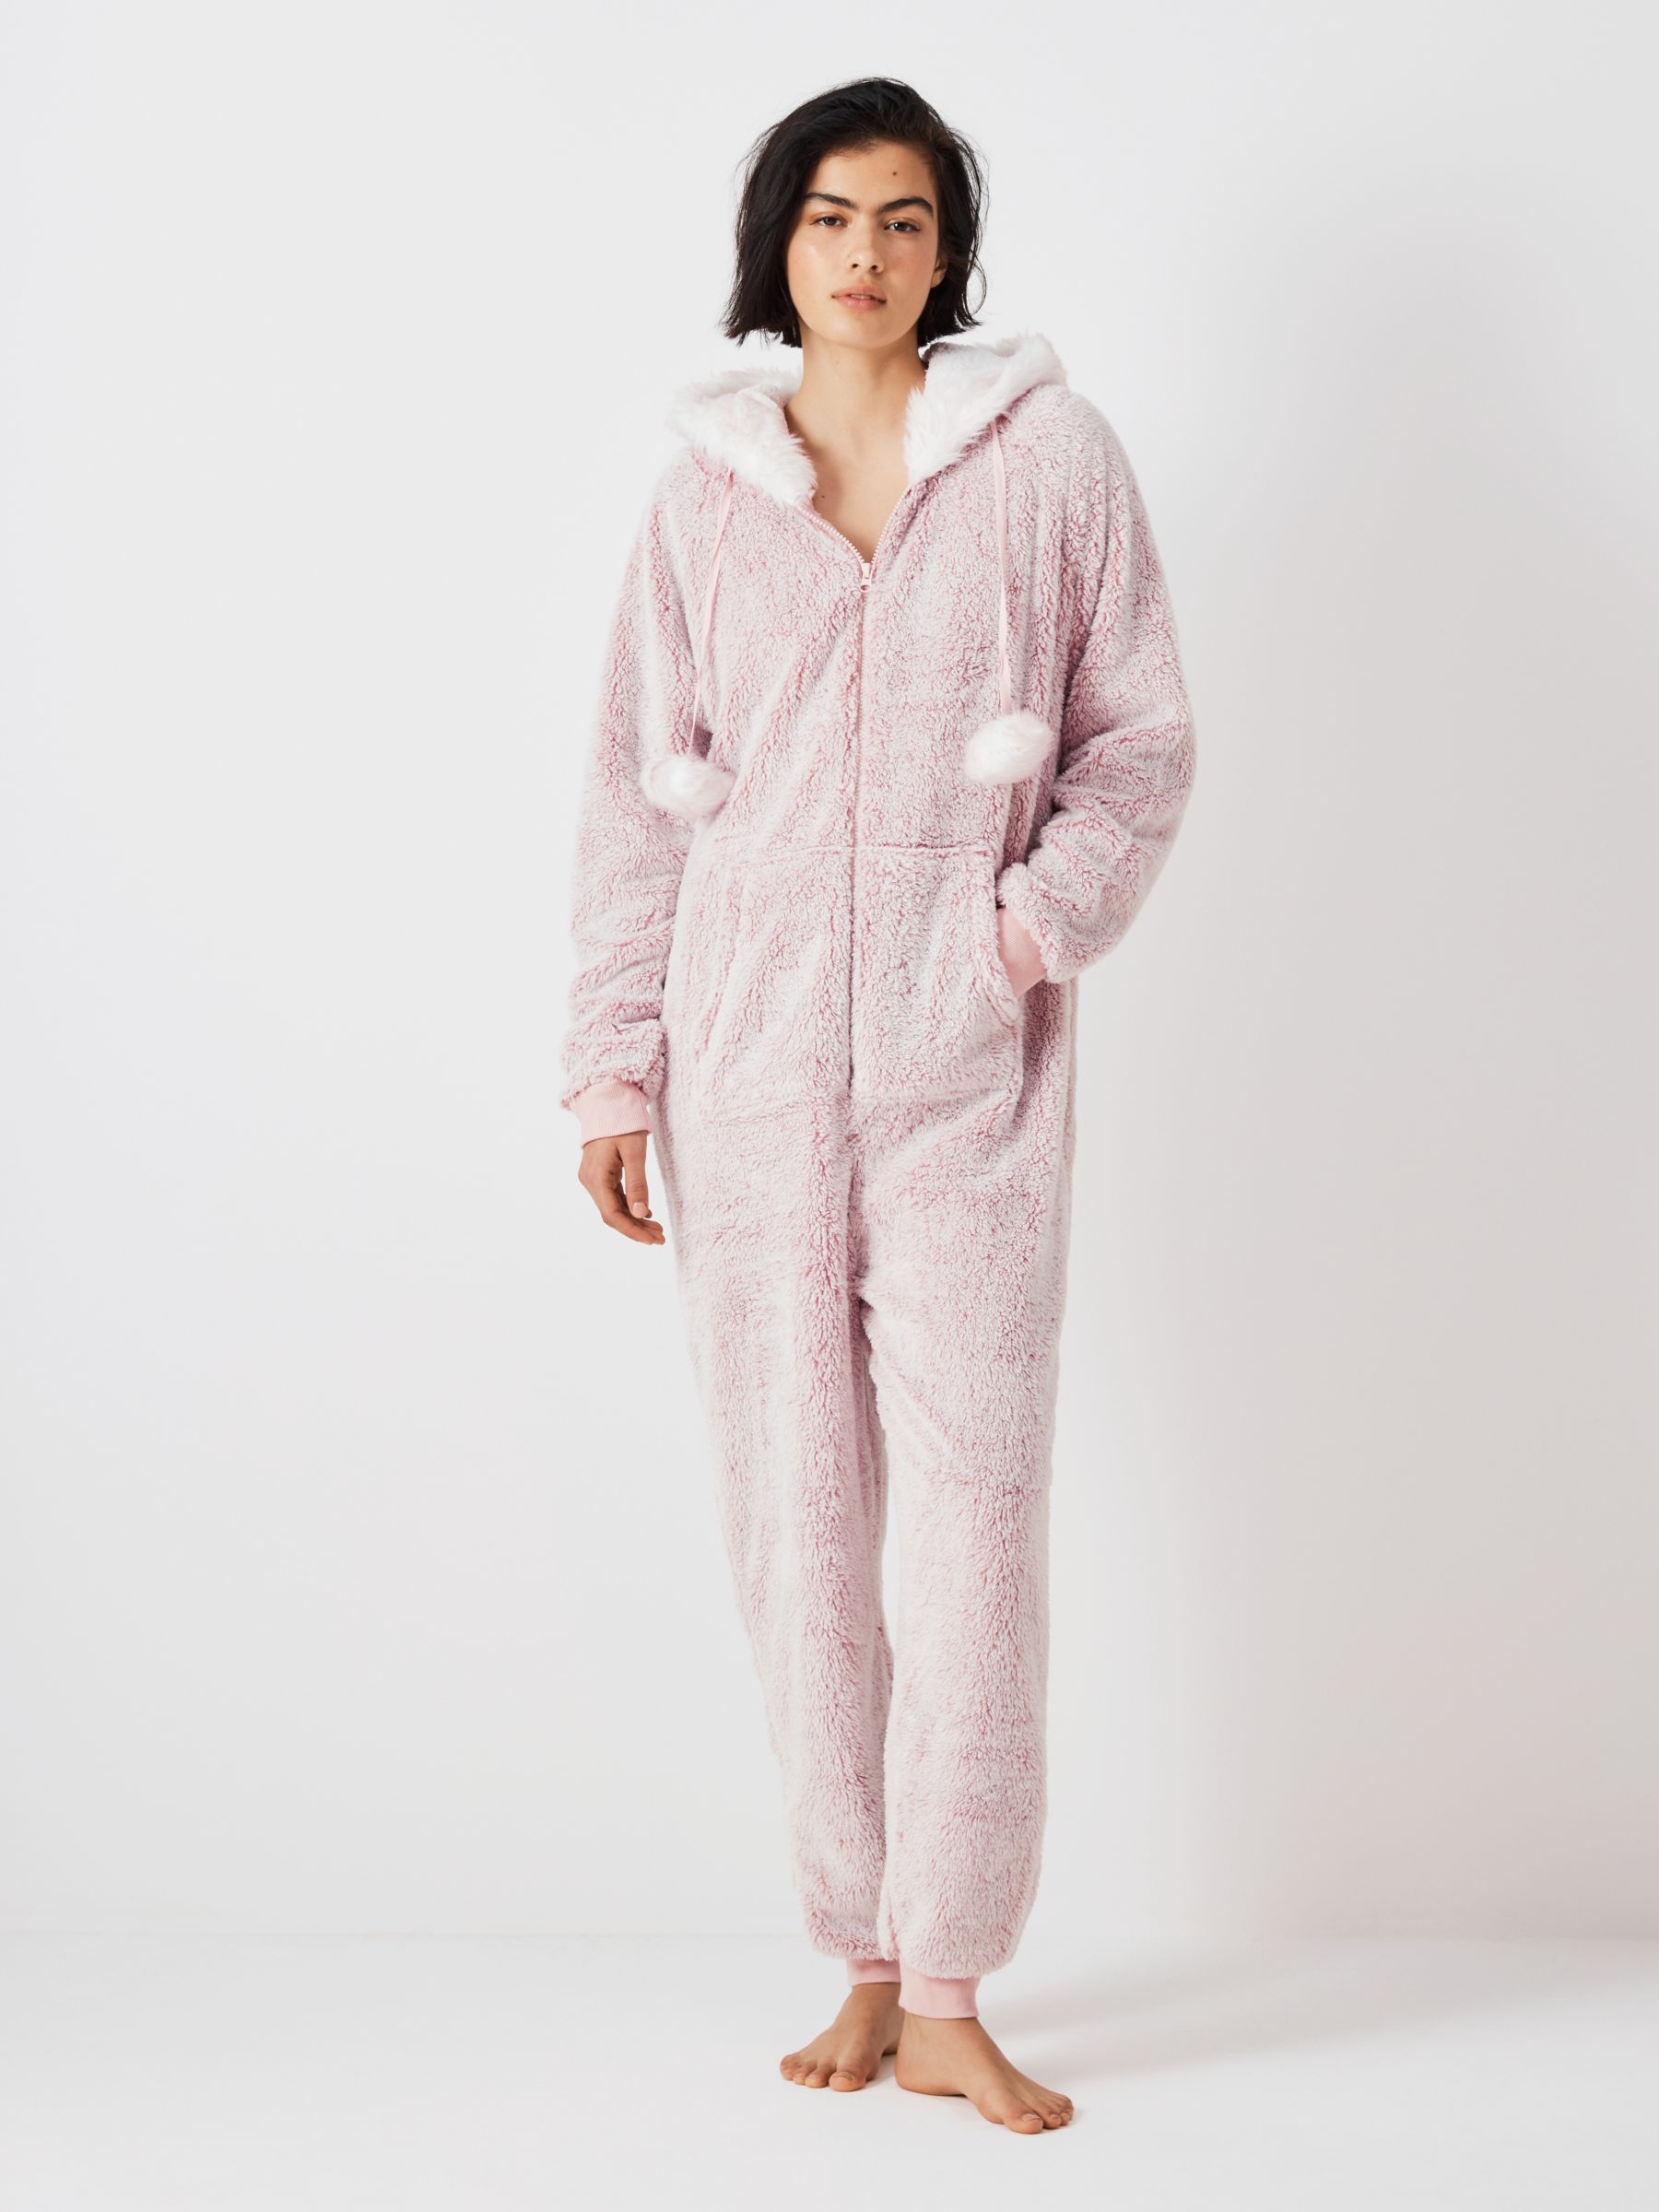 Winter Pink Zipper Sleeping Hoody Pajama Jumpsuit